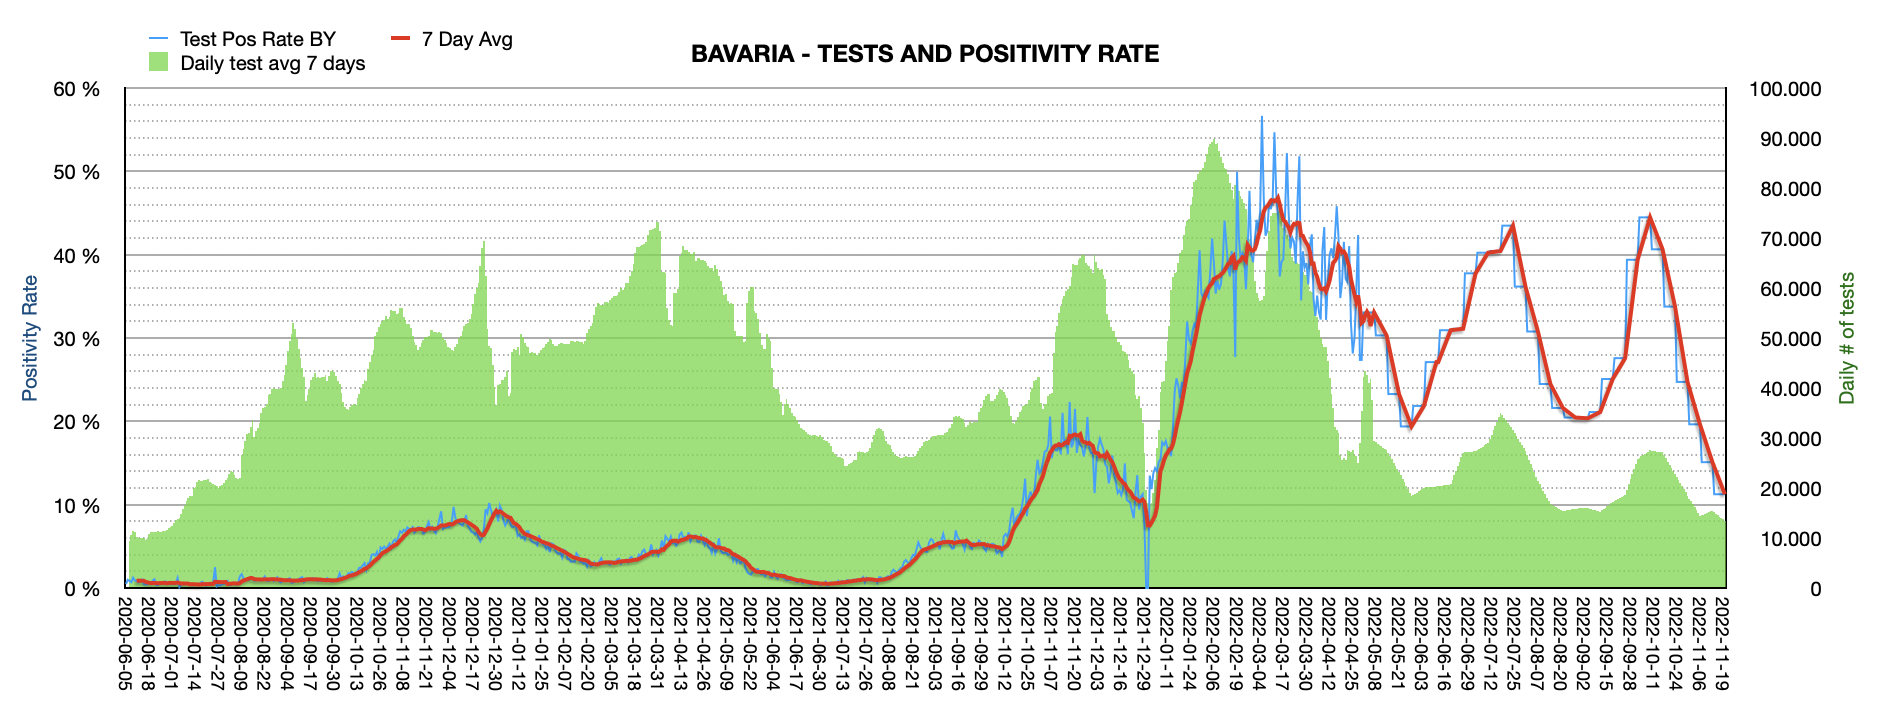 Grafik mit durchgeführten PCR Tests pro Tag in Bayern seit Juni 2020. Die Zahl der Tests pro Tag ist mit ca. 13.445 sehr niedrig und weit vom Maximum von ca. 100.000 Tests/Tag entfernt. Die Positivrate sinkt auf 11,26%.